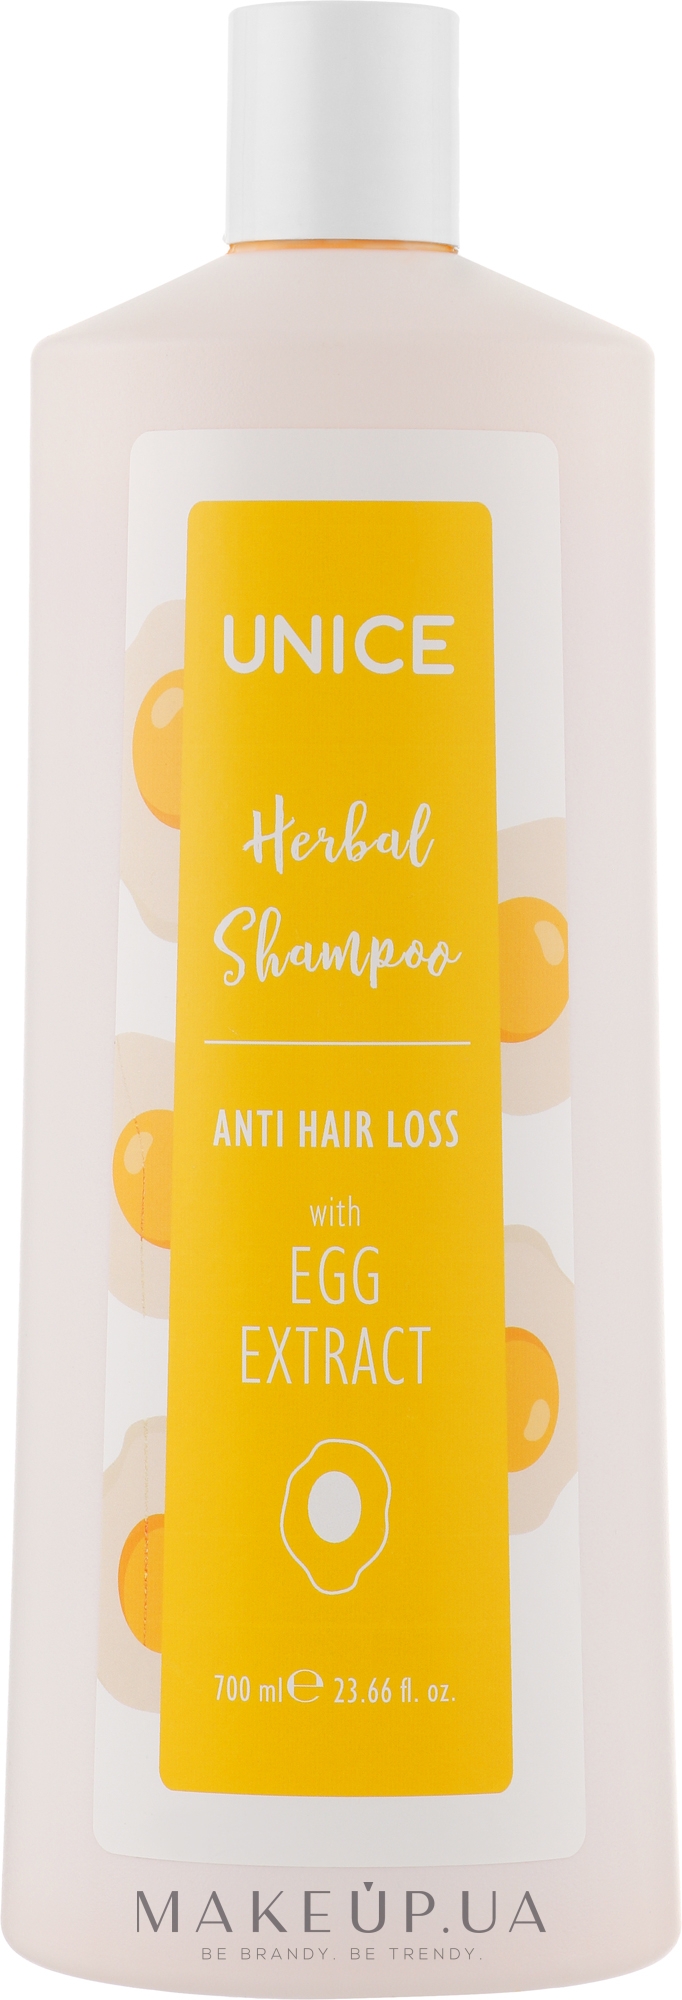 Укрепляющий яичный шампунь - Unice Herbal Shampoo Anti Hair Loss — фото 700ml